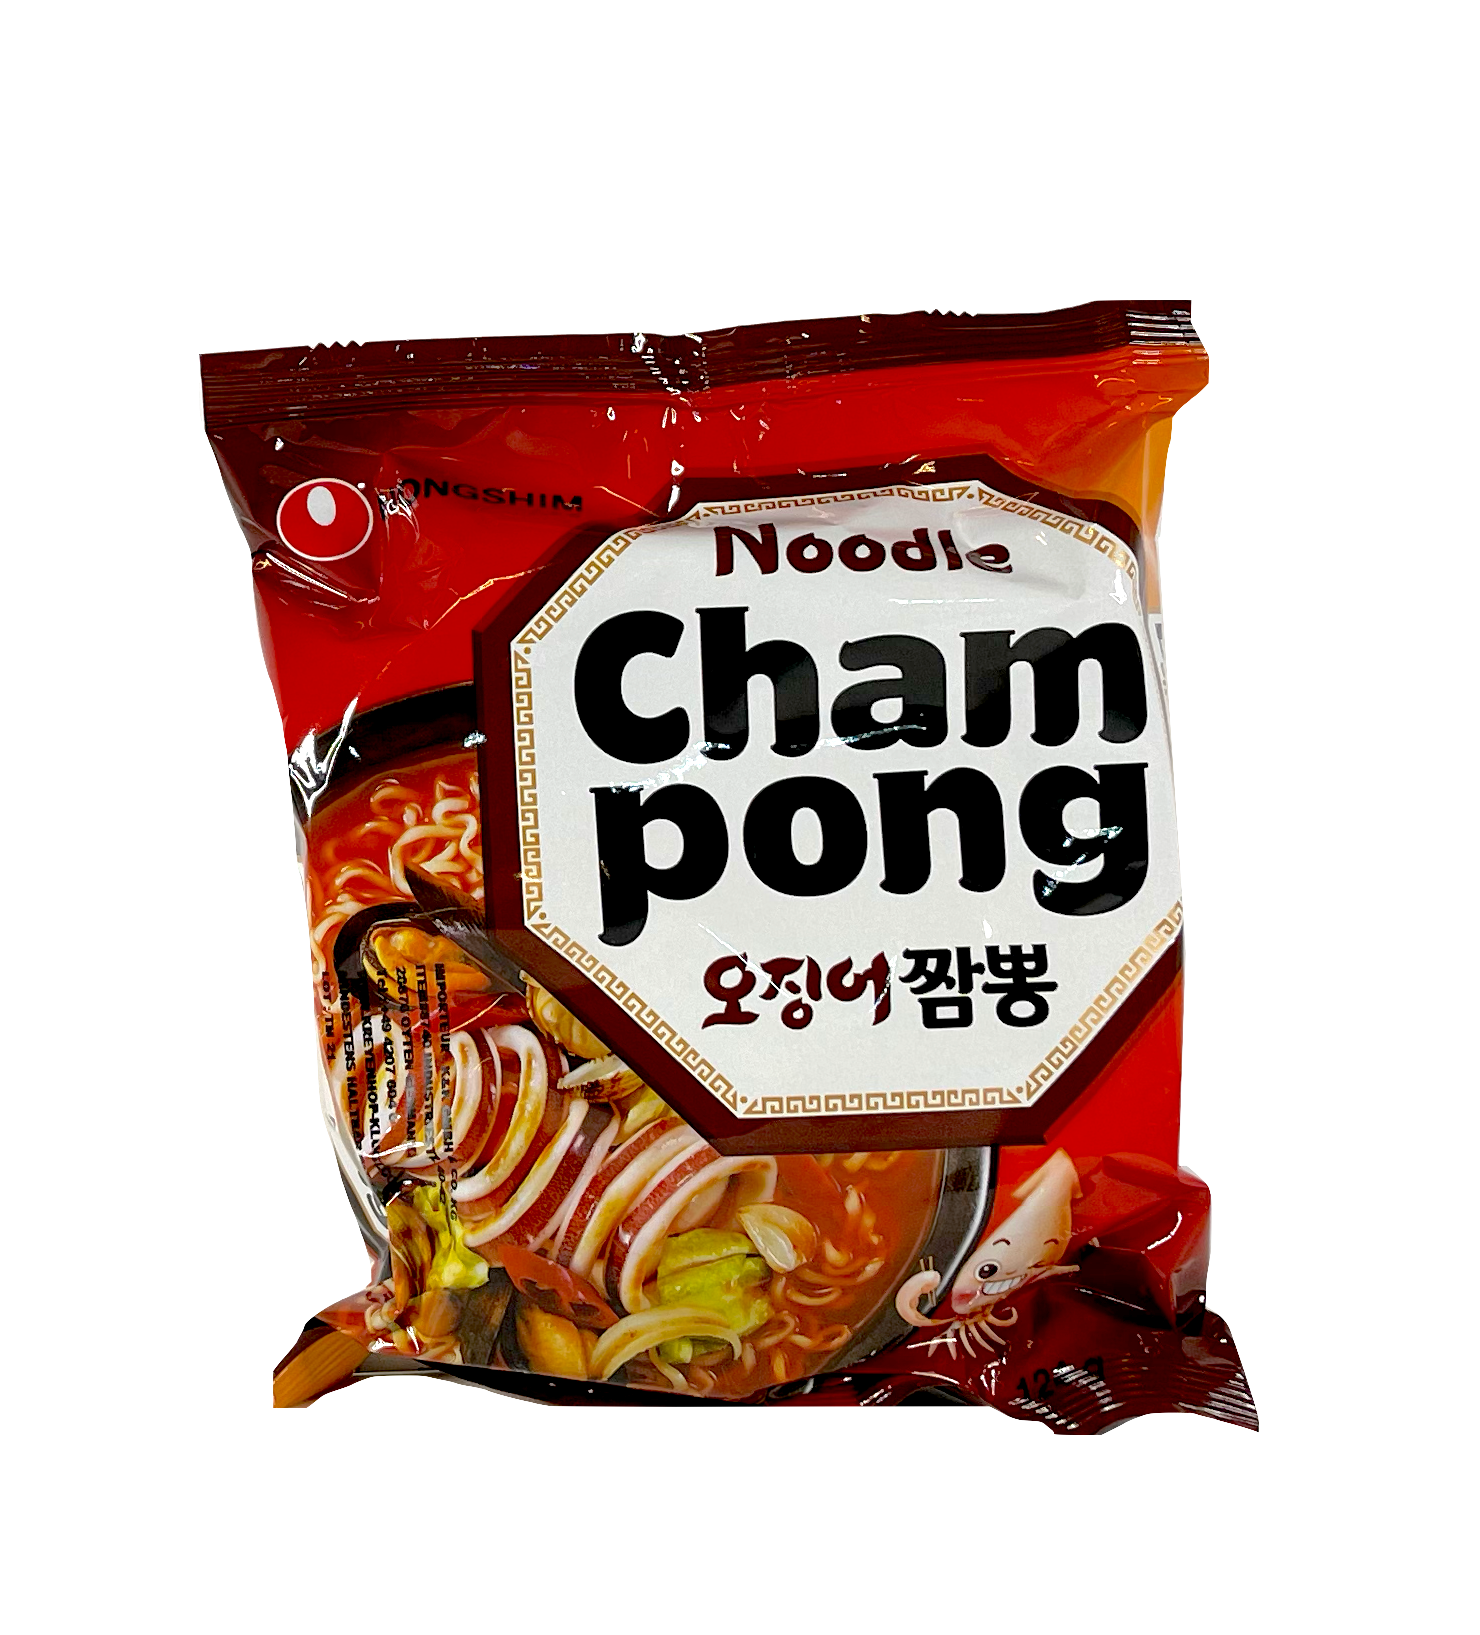 方便面 Cham Pong 海鲜風味 124g 农心 韩国